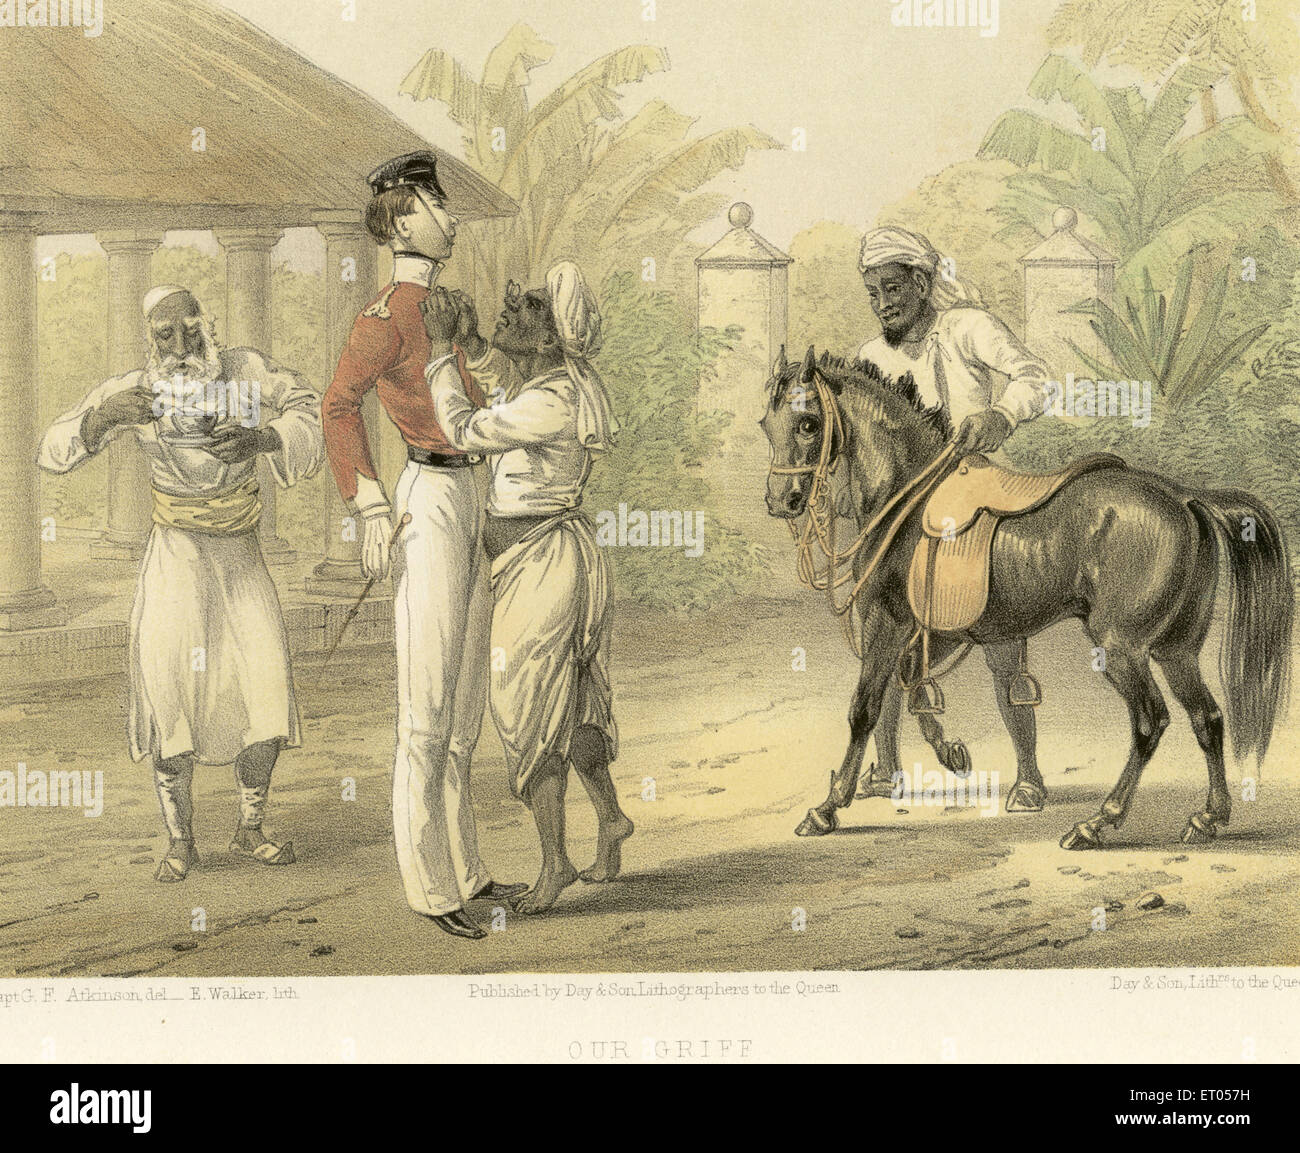 Images coloniales indiennes, servante esclave prenant soin de l'officier britannique, Inde, vieux vintage 1800s gravure Banque D'Images